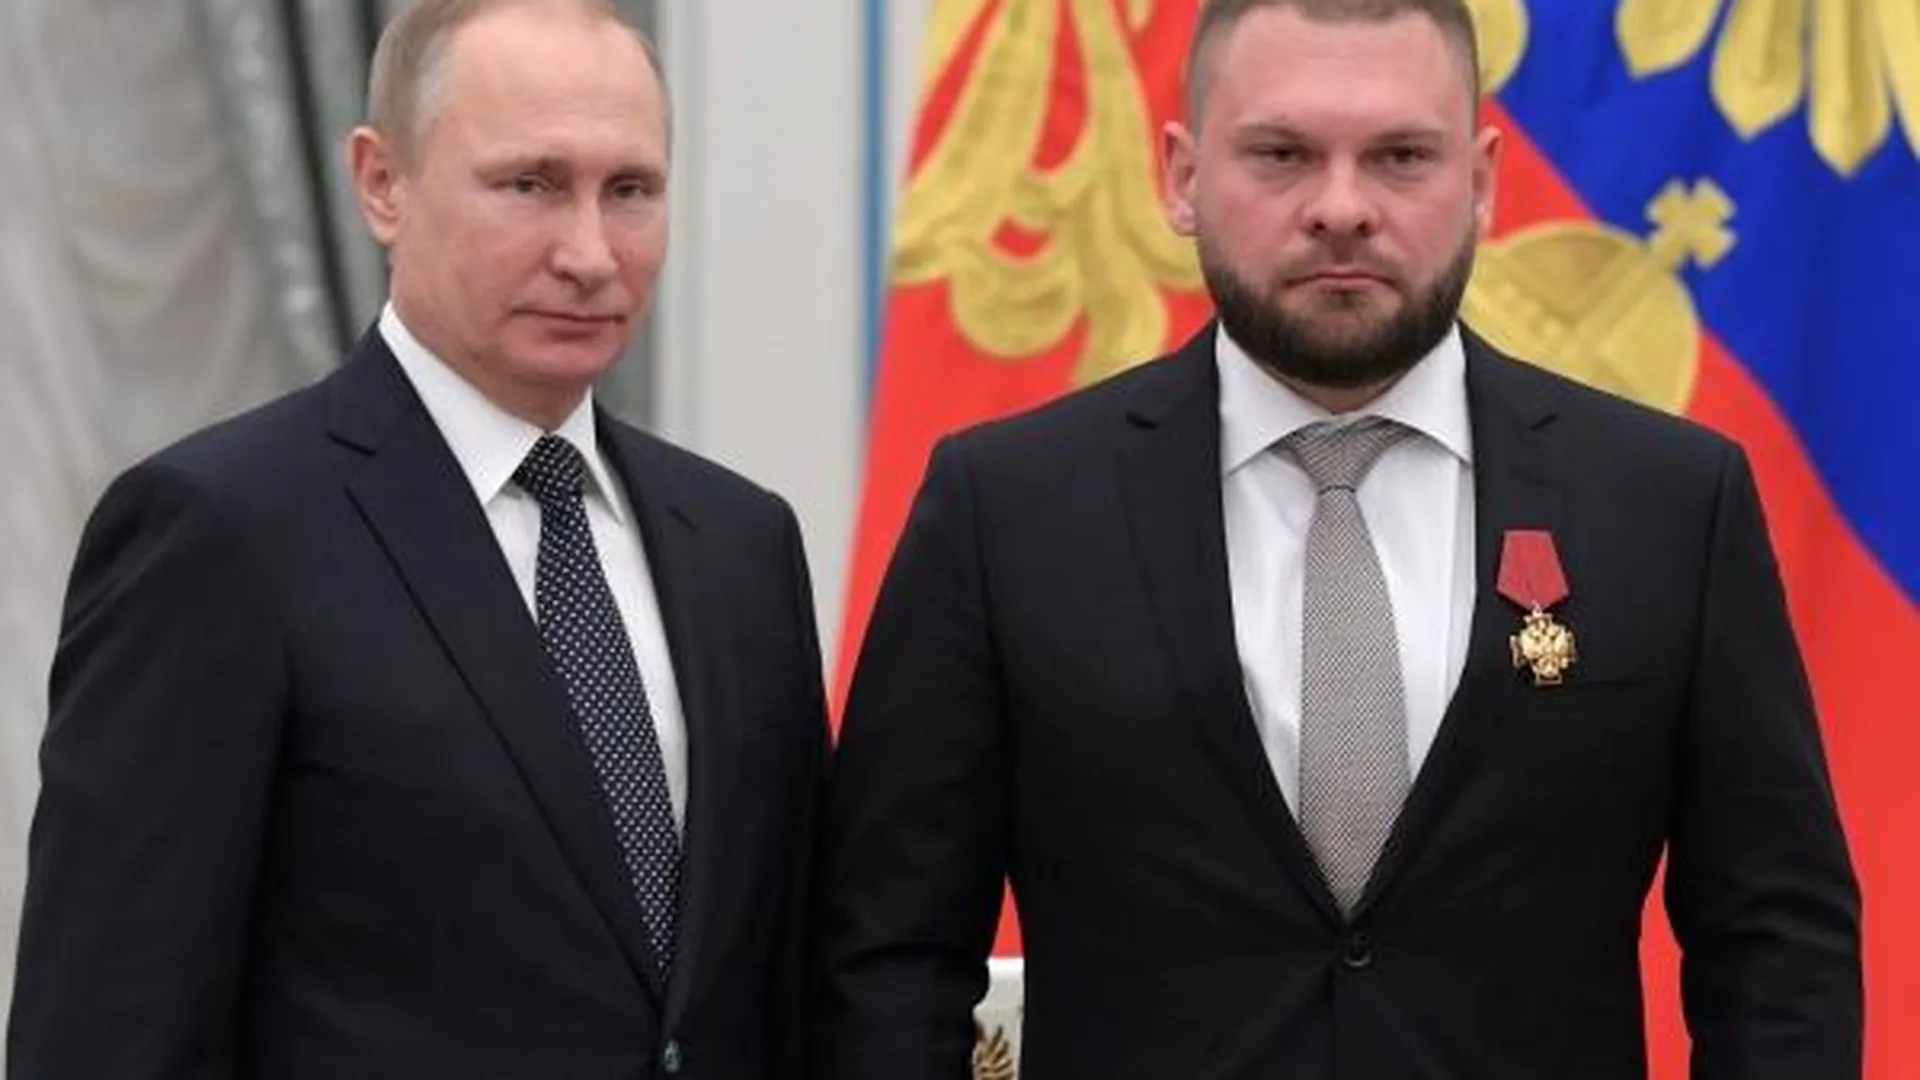 Владимир Путин и Евгений Поддубный (справа) во время церемонии вручения государственных наград